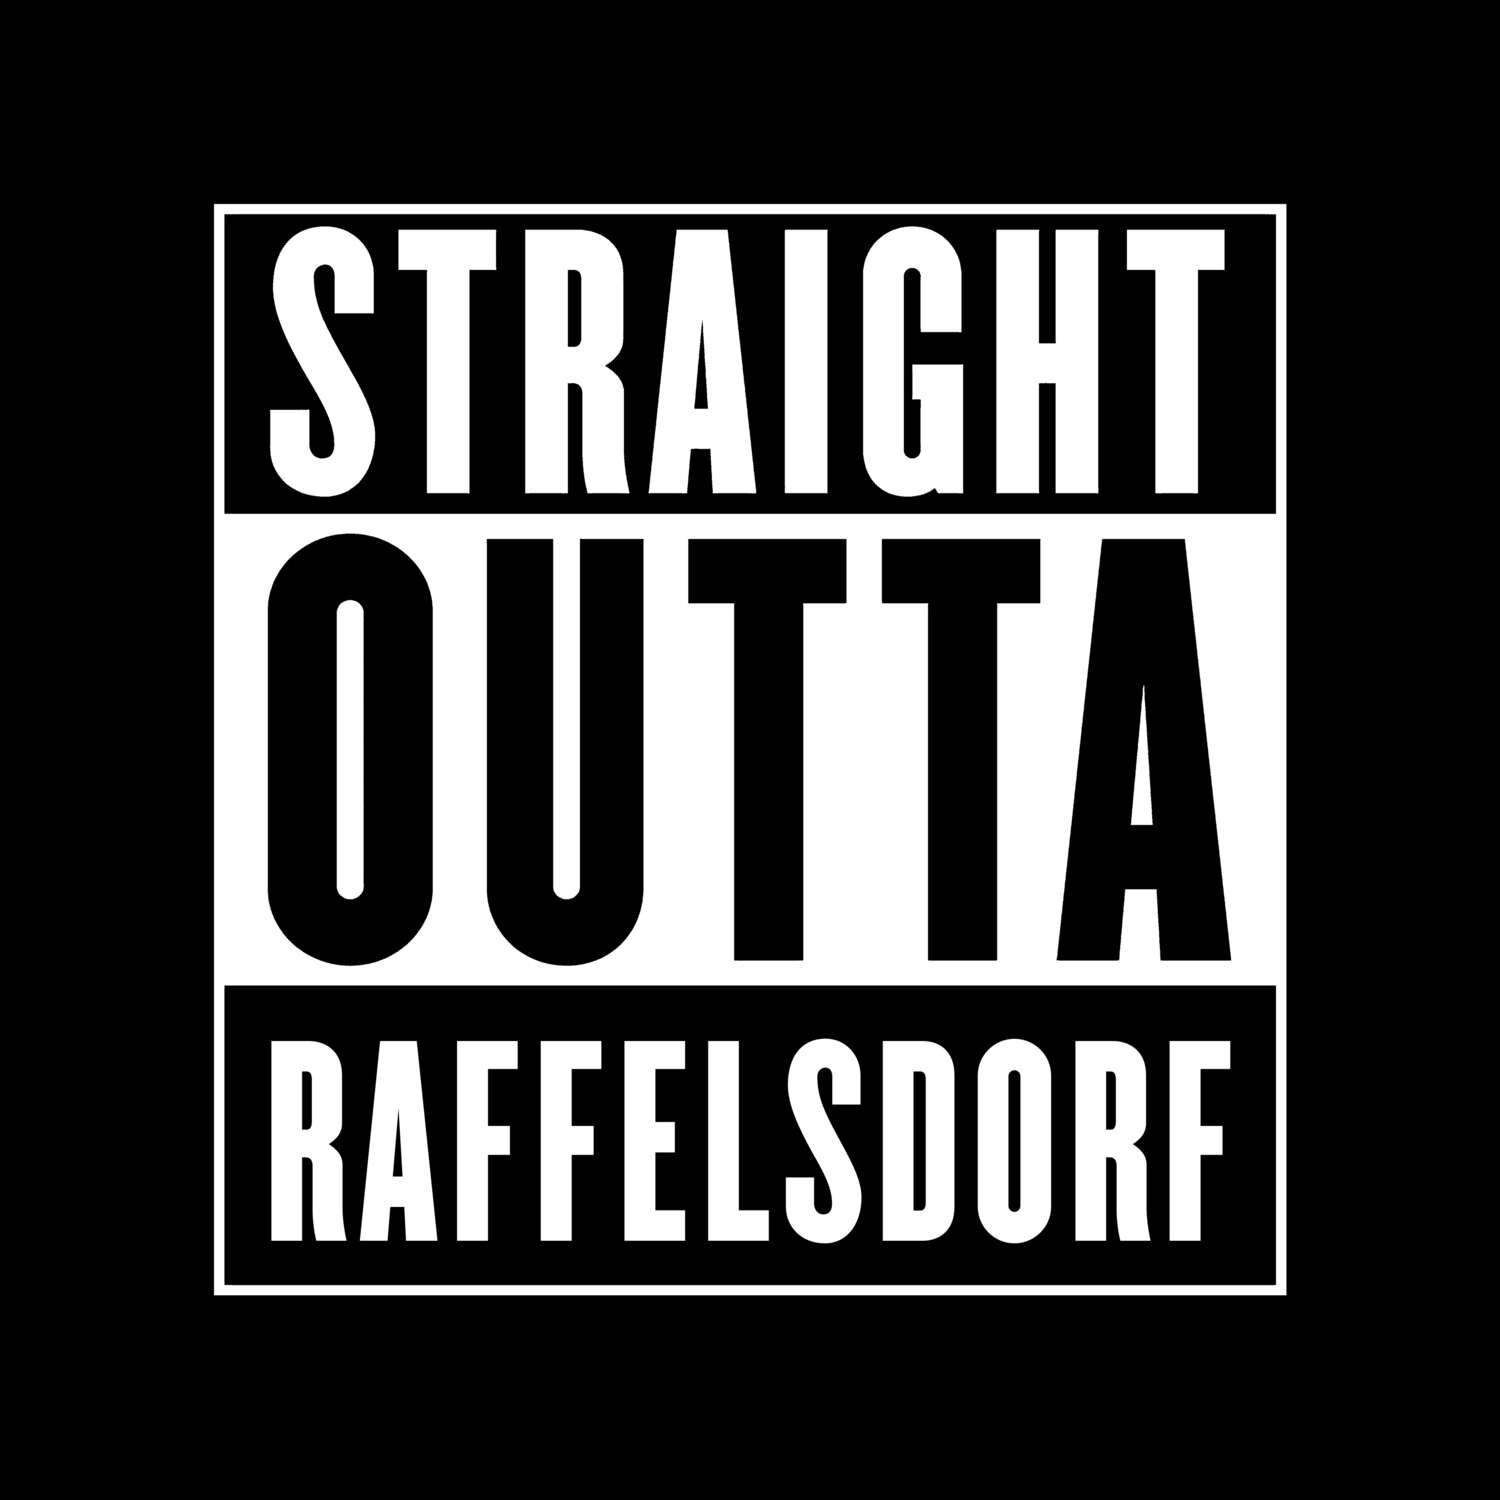 Raffelsdorf T-Shirt »Straight Outta«